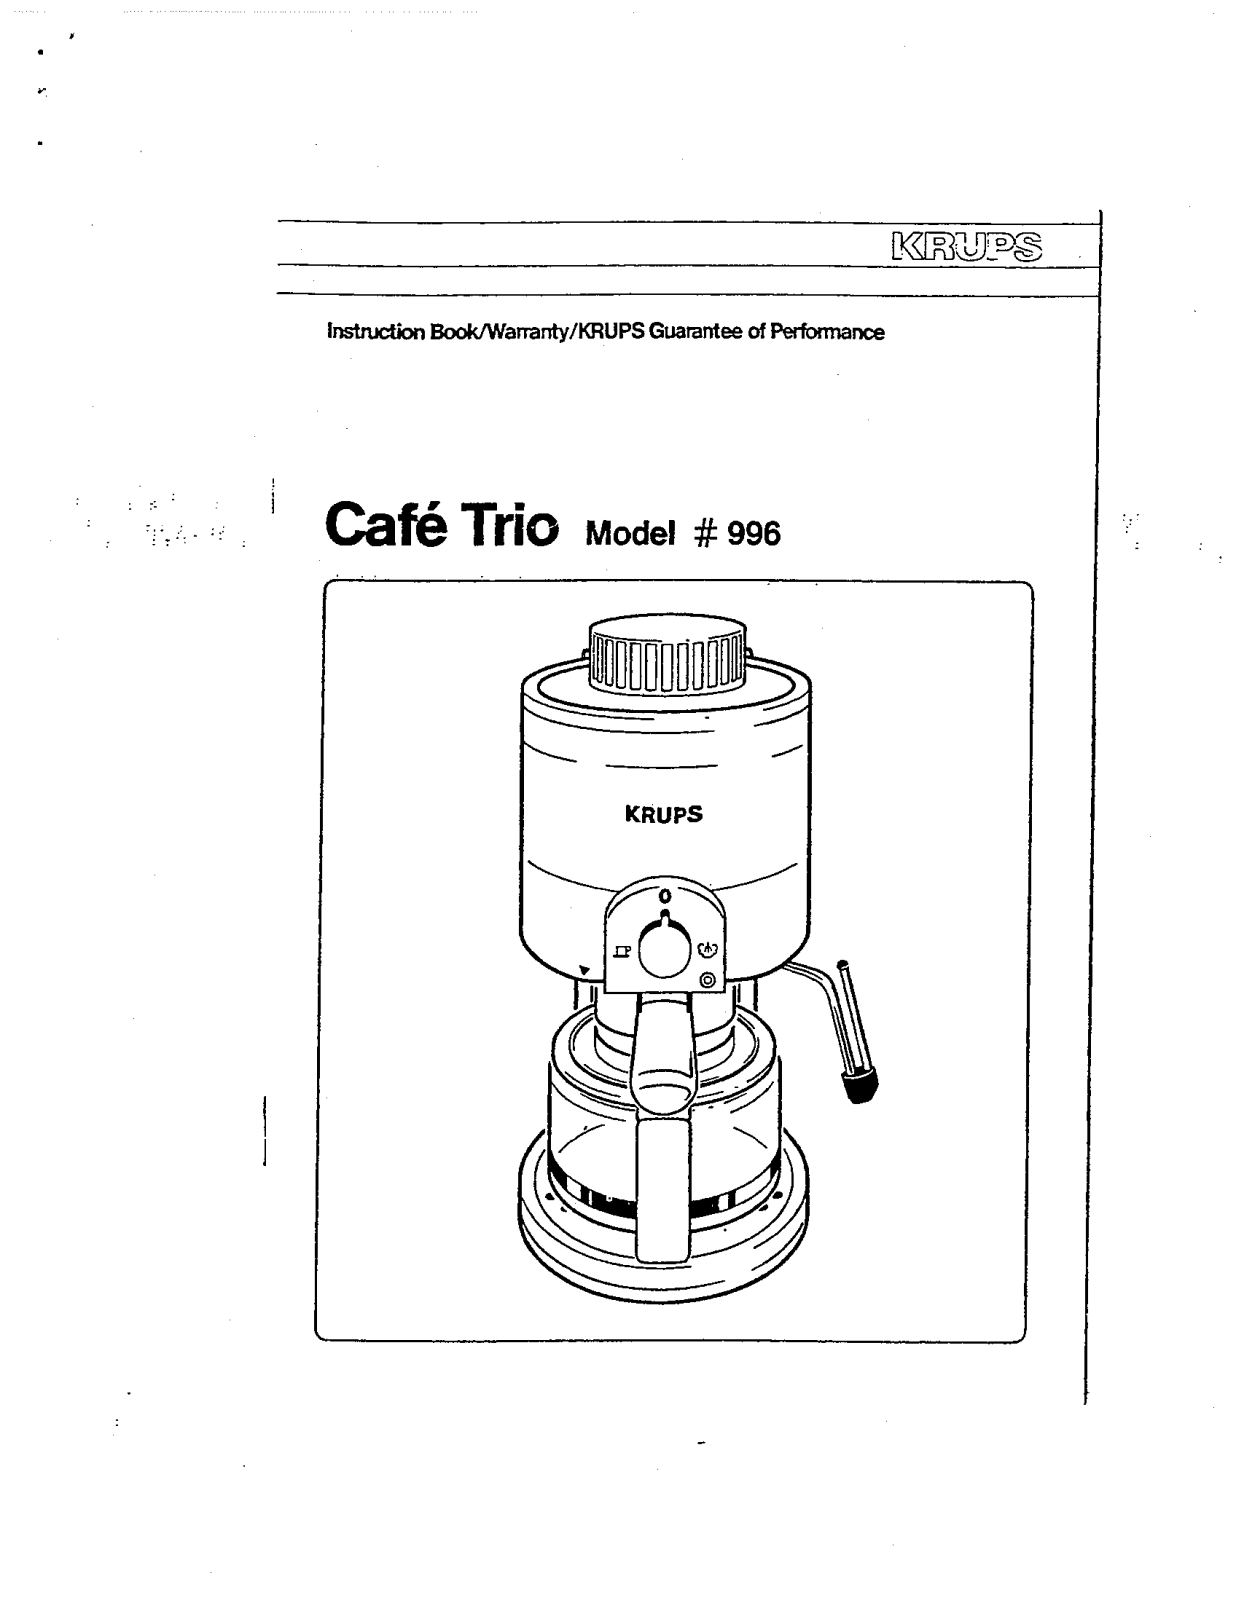 Krups 996, CAFE TRIO Manual